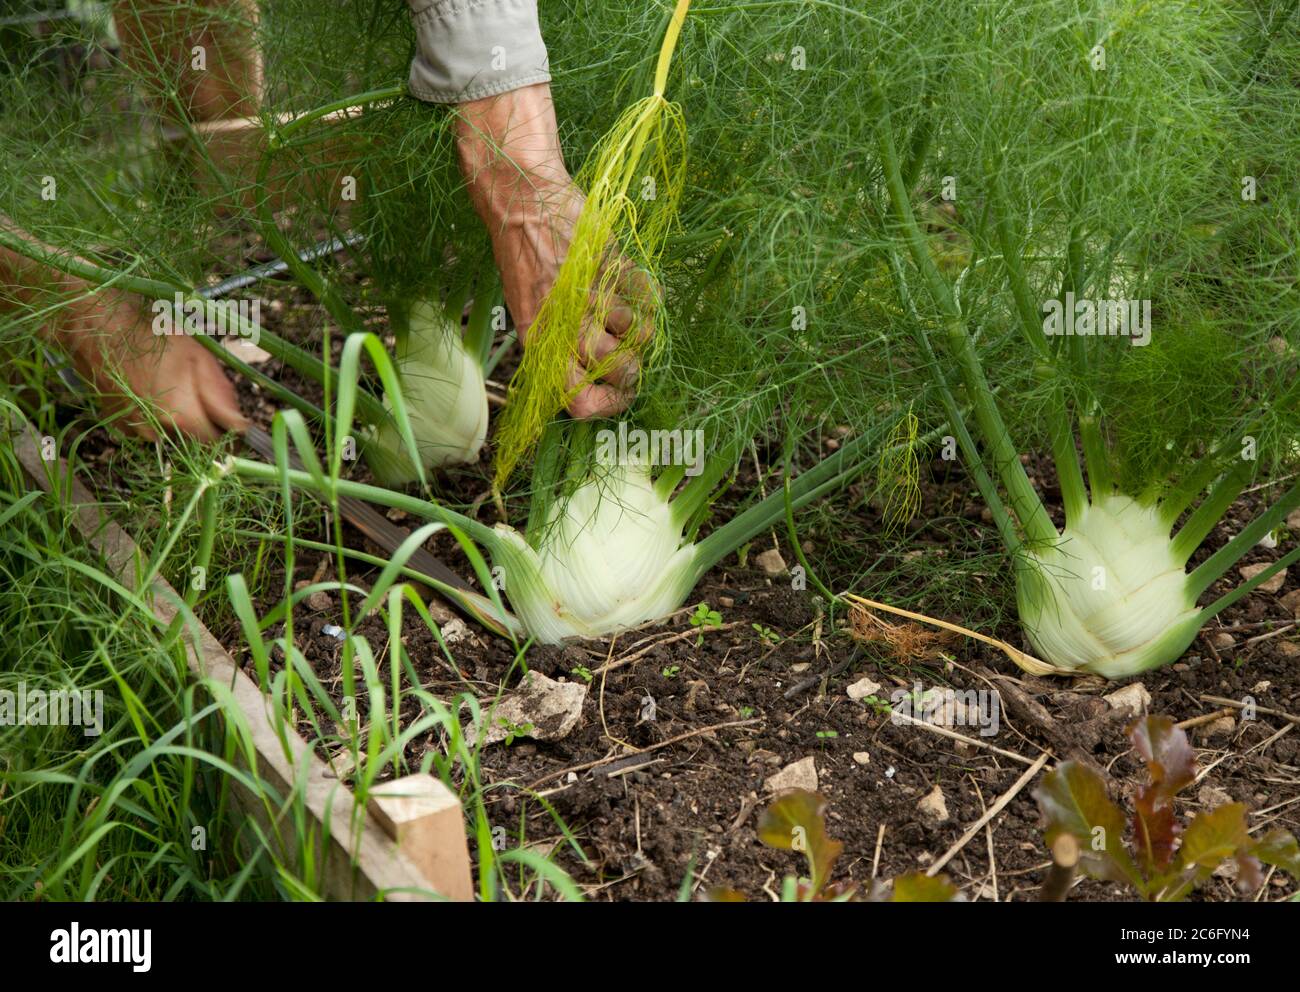 Nahaufnahme eines männlichen Gärtners, der Fenchelknollen in einem Gemüsegarten schneidet Stockfoto